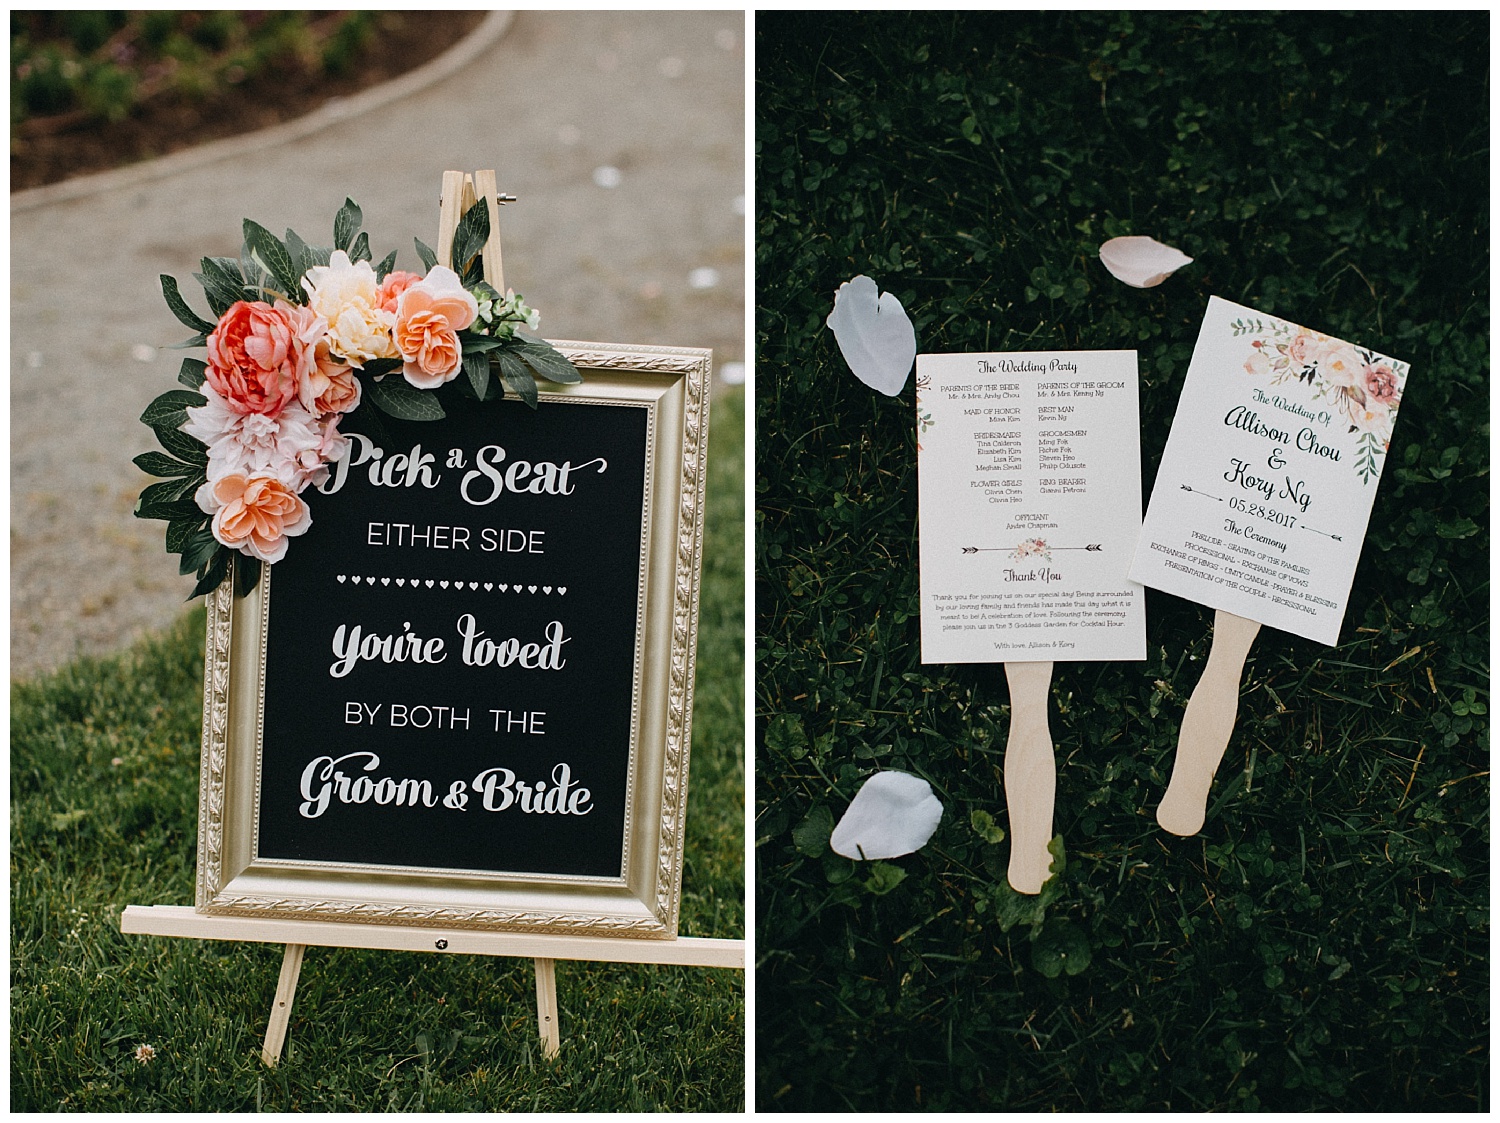 DIY signs and programs at boston wedding